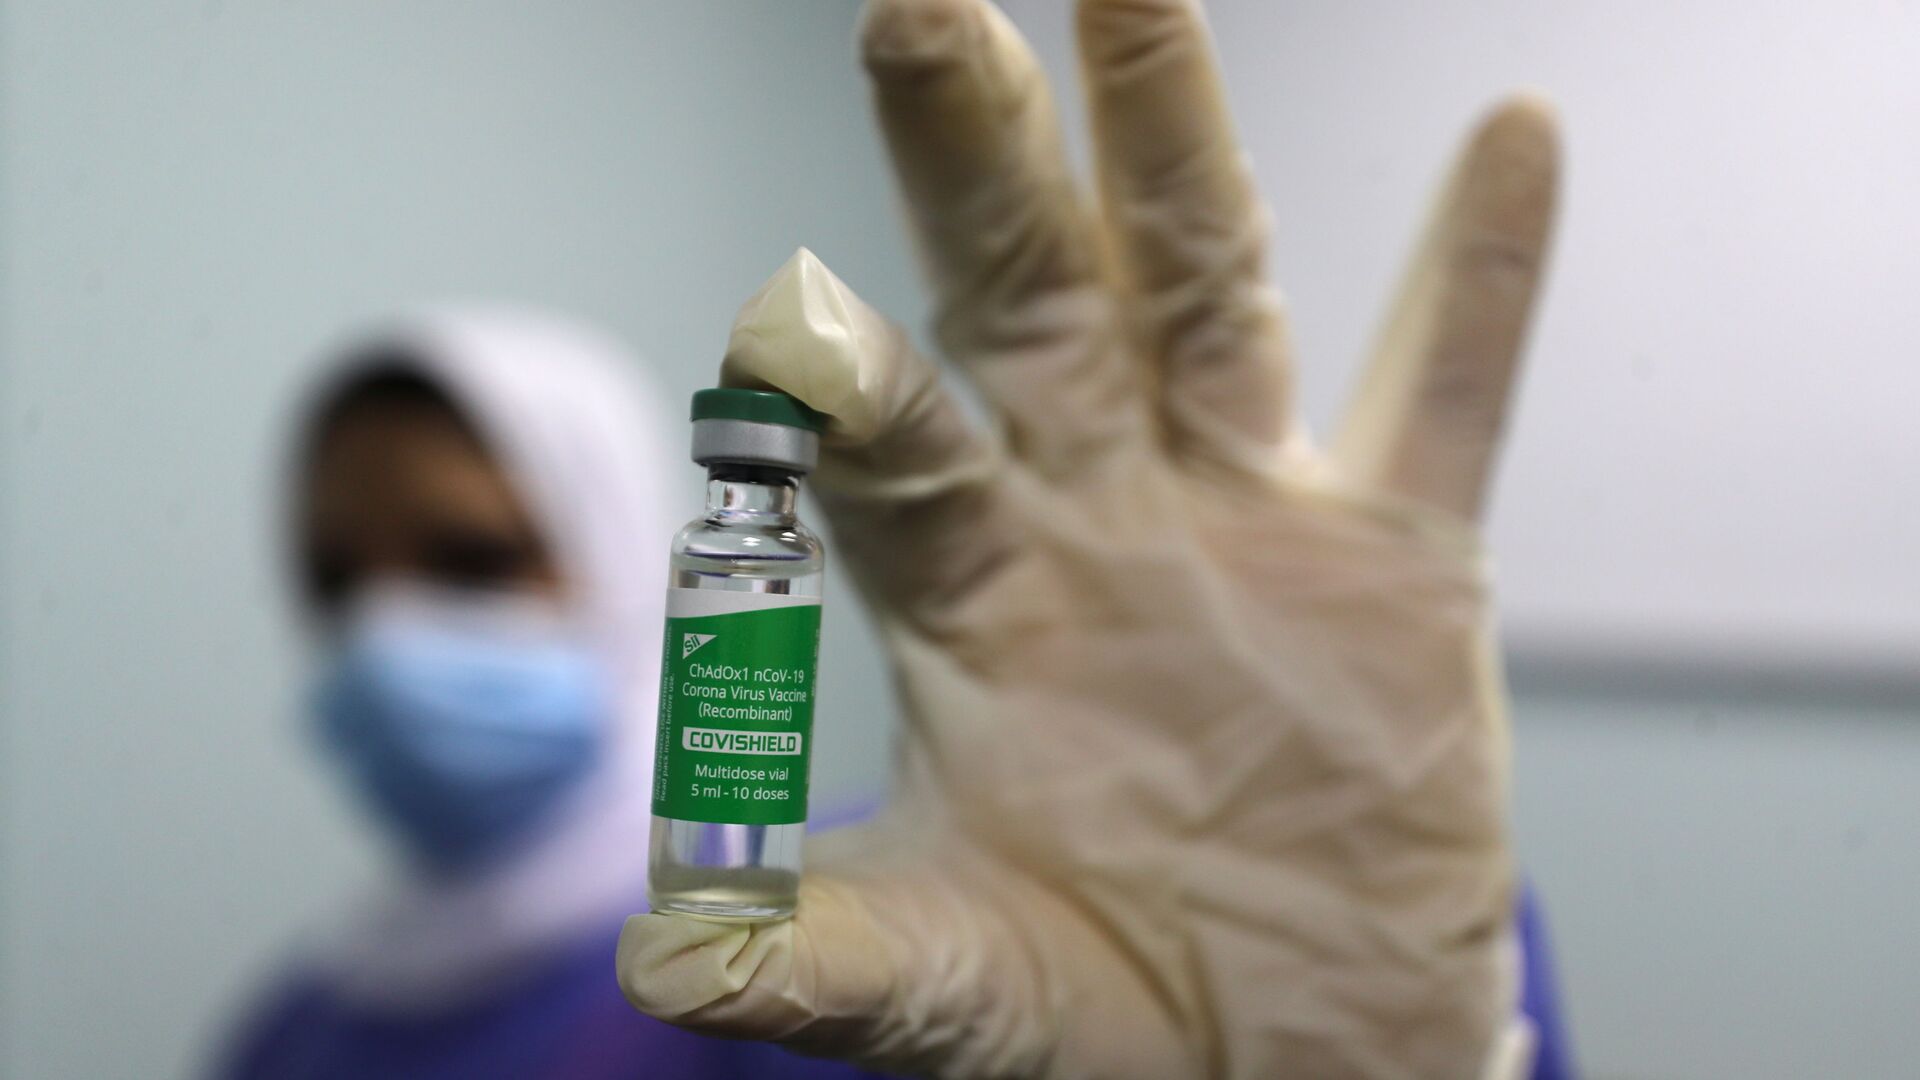 بدء تطعيم واسع النطاق في مصر ضد فيروس كورونا (كوفيد-19)، القاهرة، 4 مارس 2021 - سبوتنيك عربي, 1920, 10.07.2021